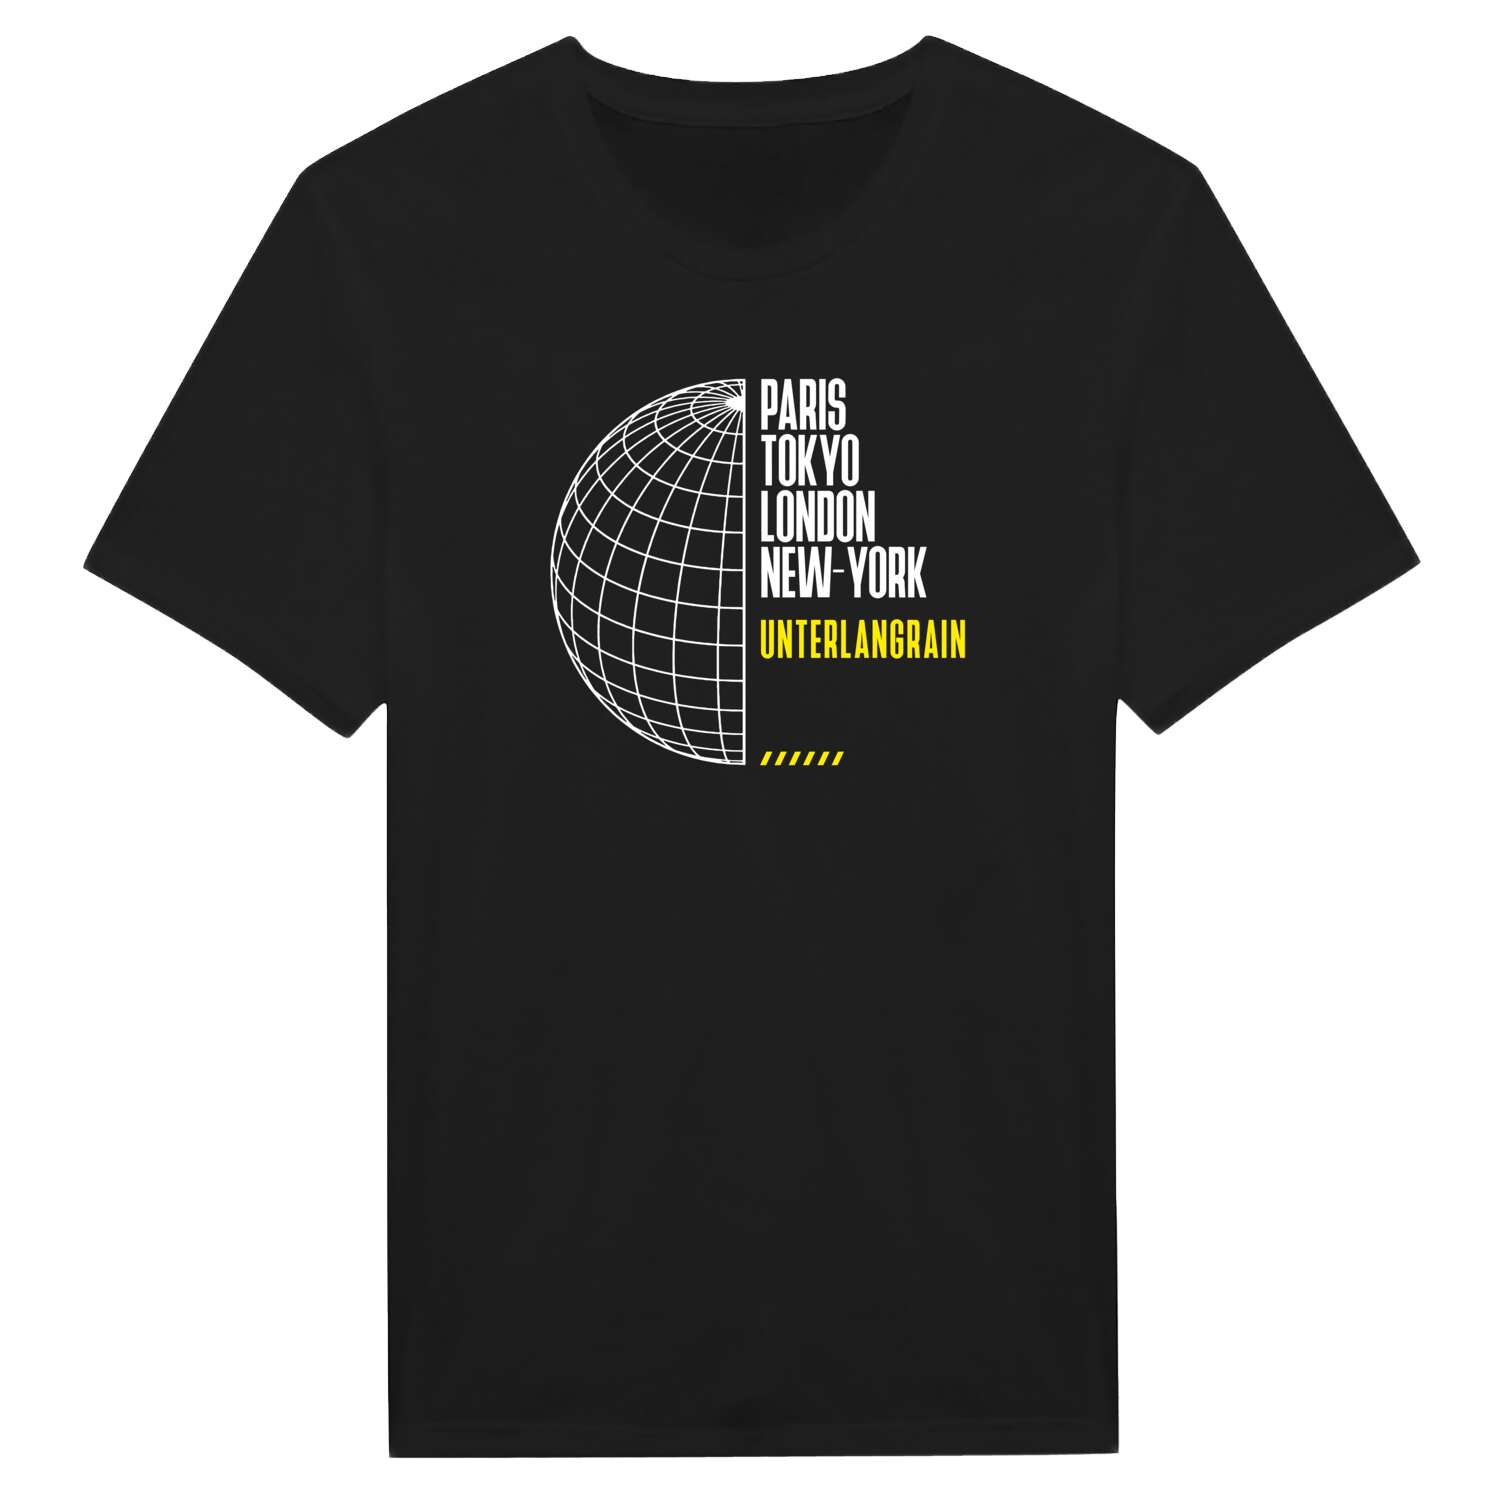 Unterlangrain T-Shirt »Paris Tokyo London«